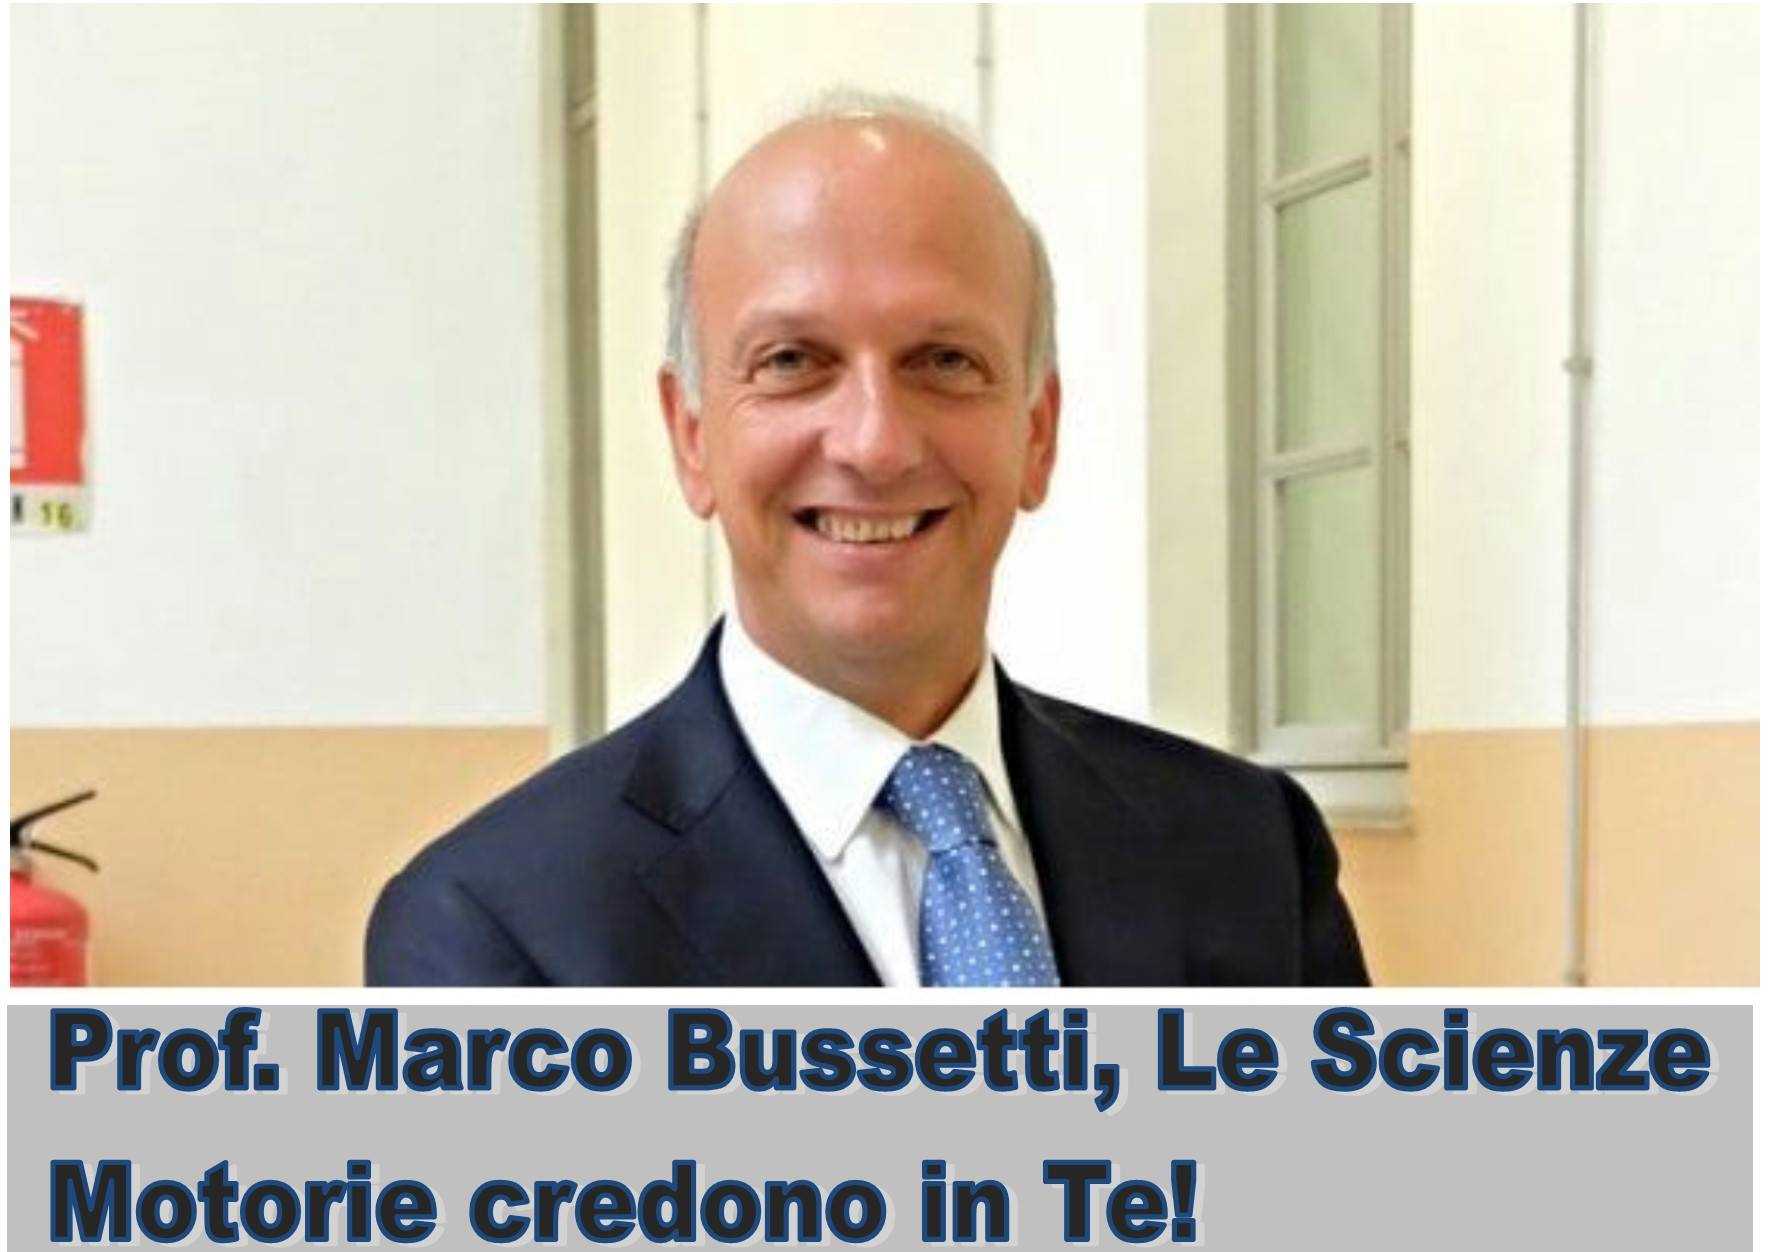 Governo: Marco Bussetti, un sogno divenuto realtà. CISM - Comitato Italiano Scienze Motorie